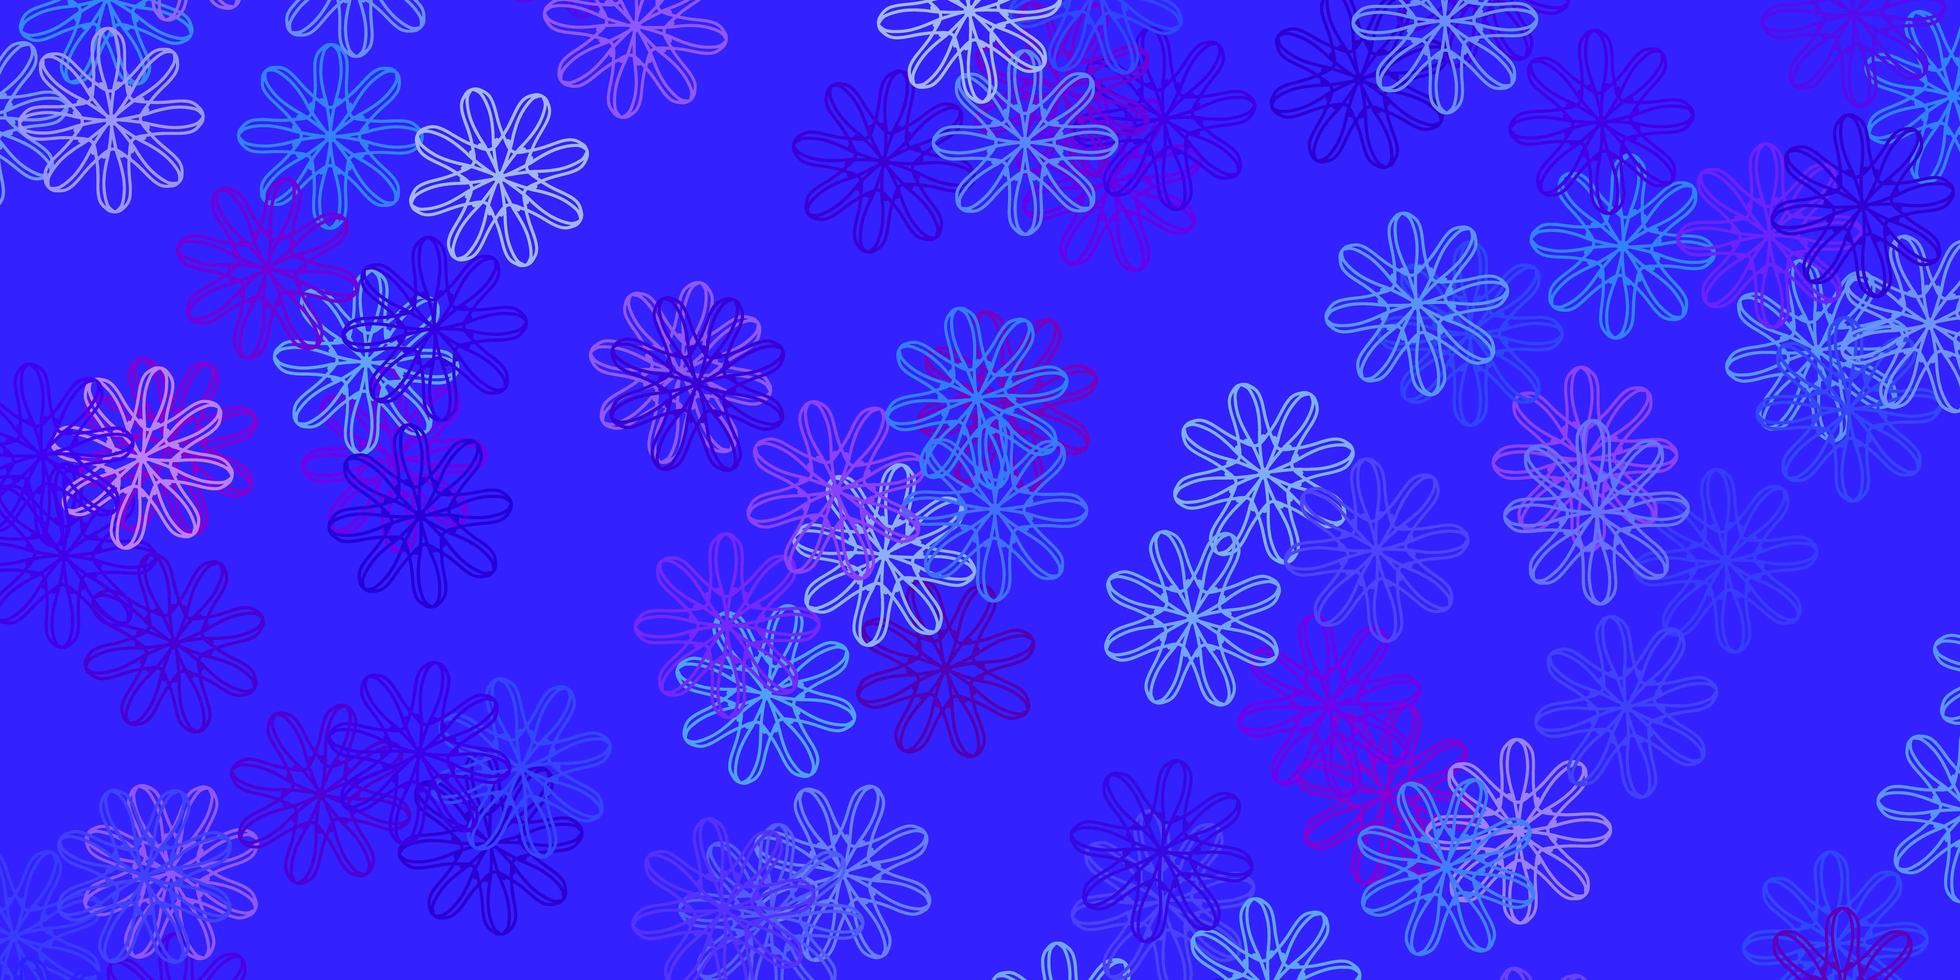 modello di doodle vettoriale azzurro, rosso con fiori.